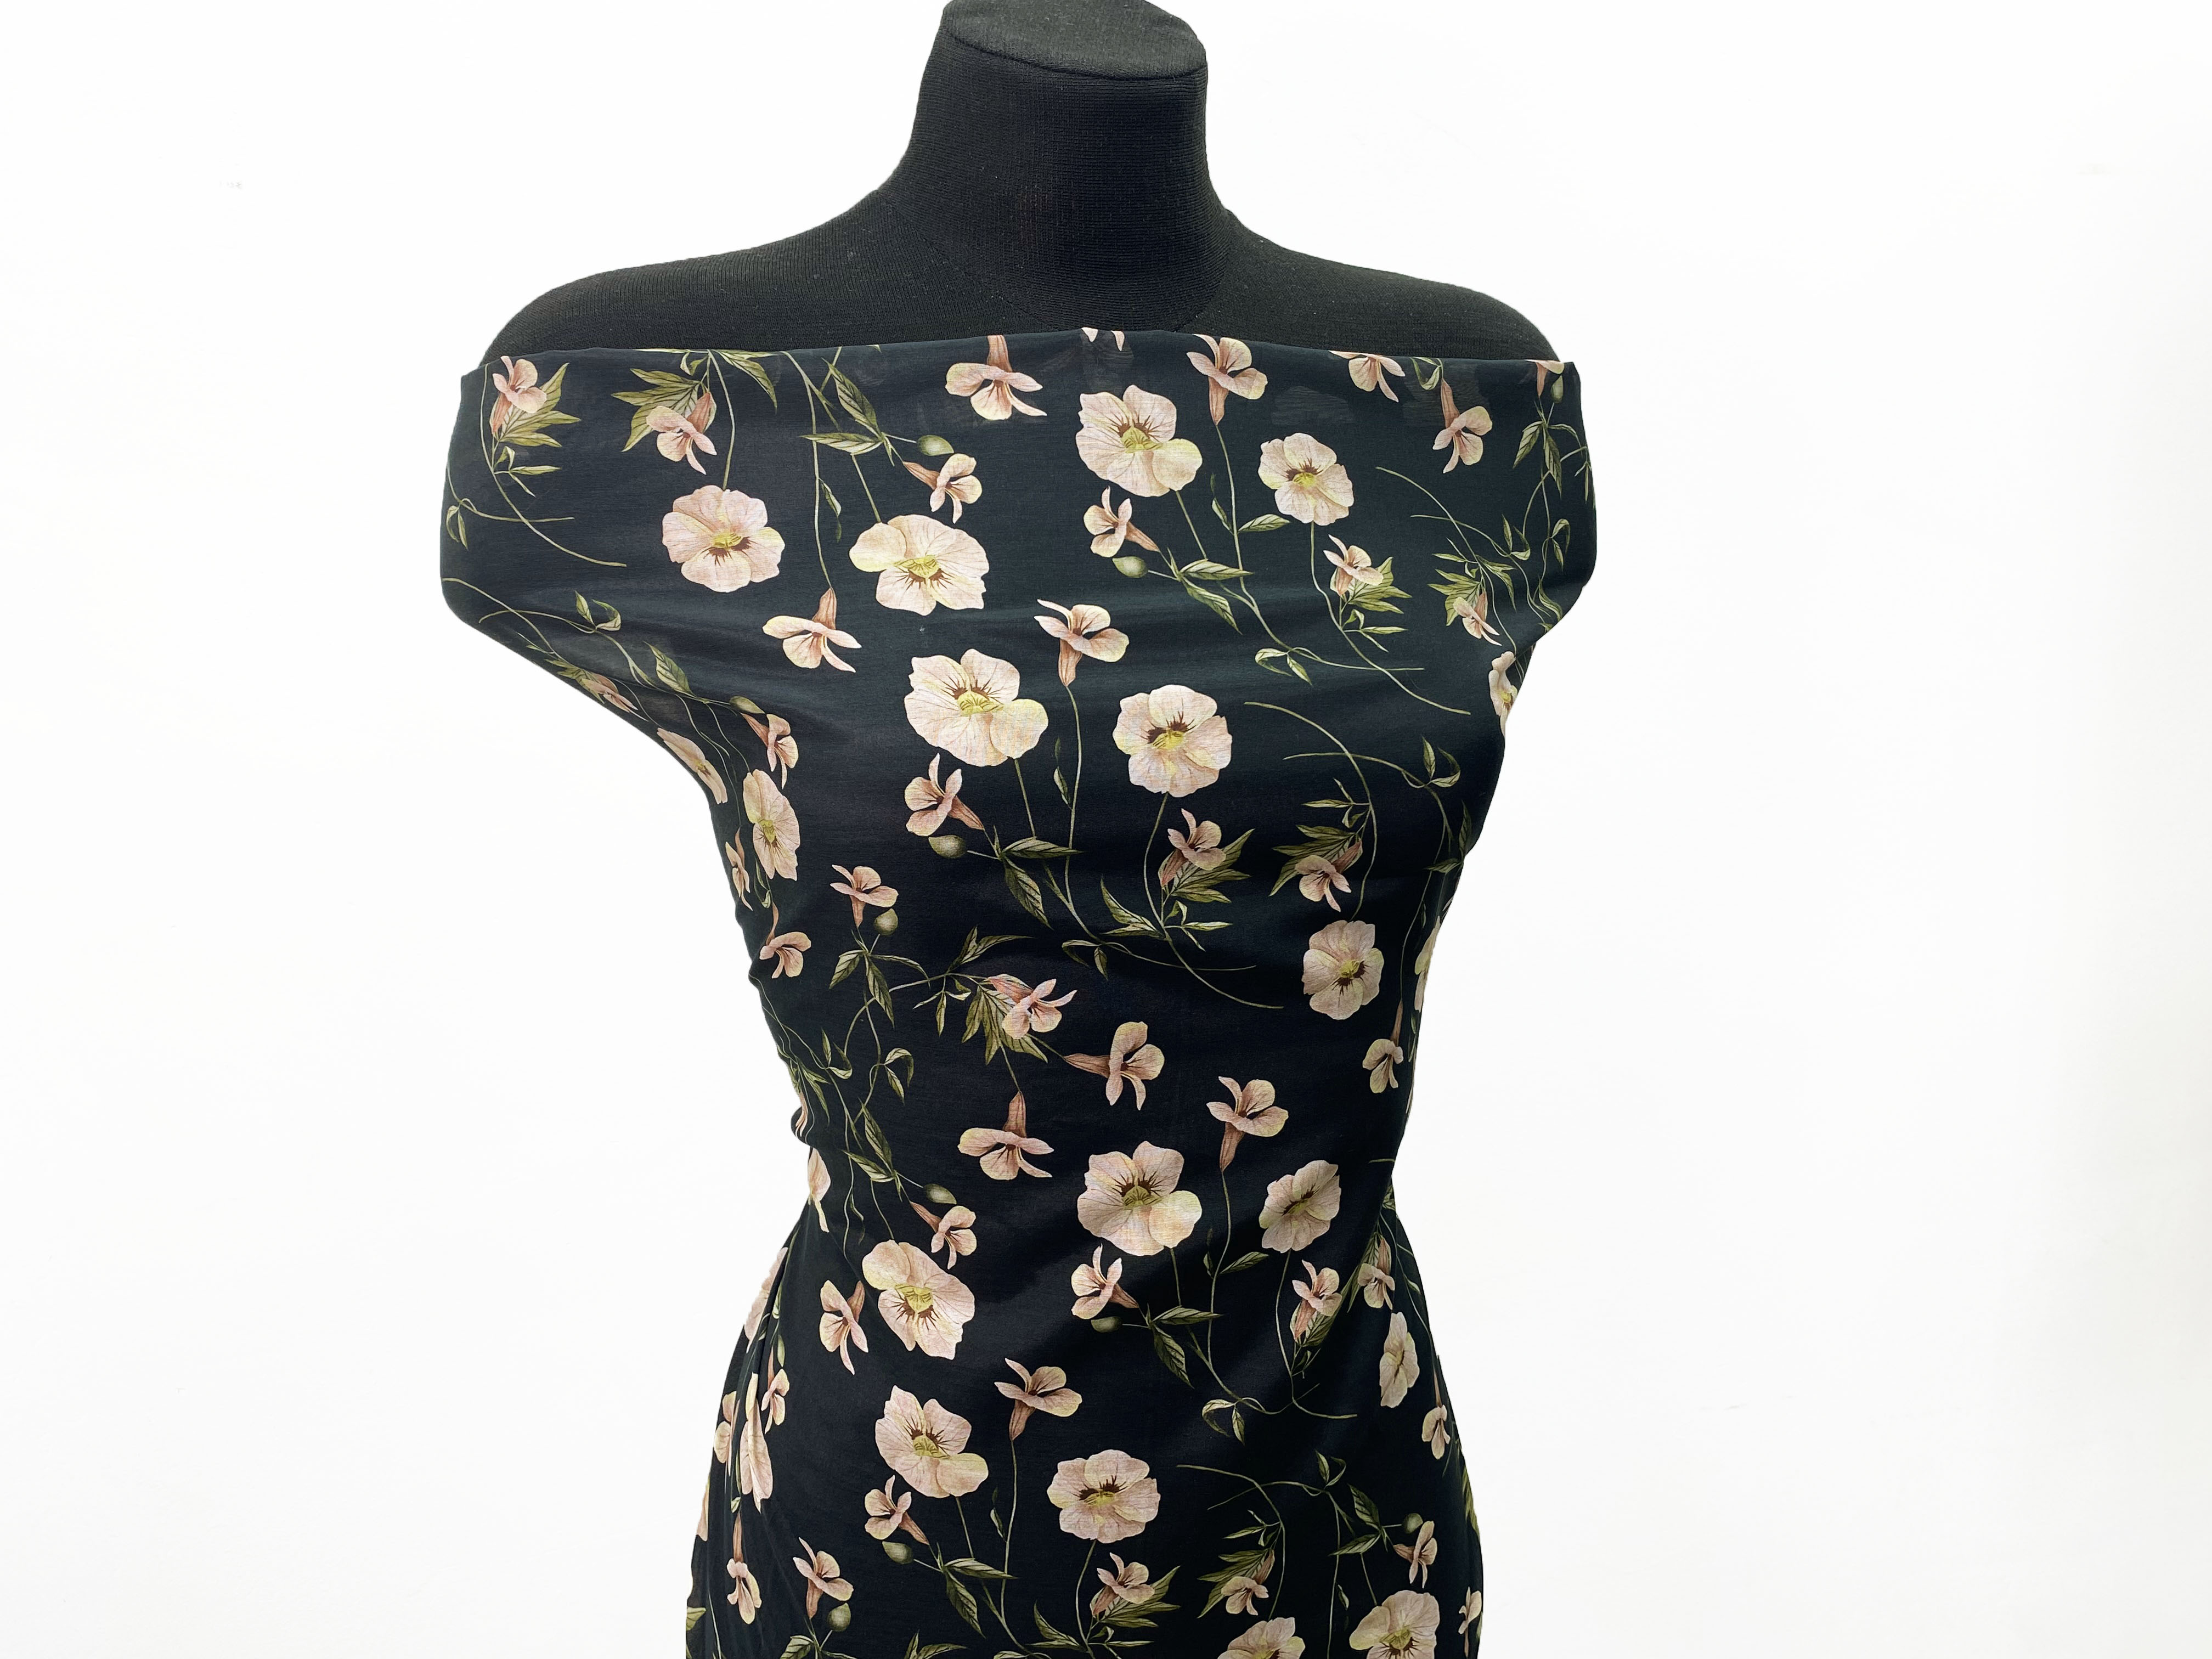 Ткань Муслин  чёрного цвета с принтом  персиковые цветы  16741 5